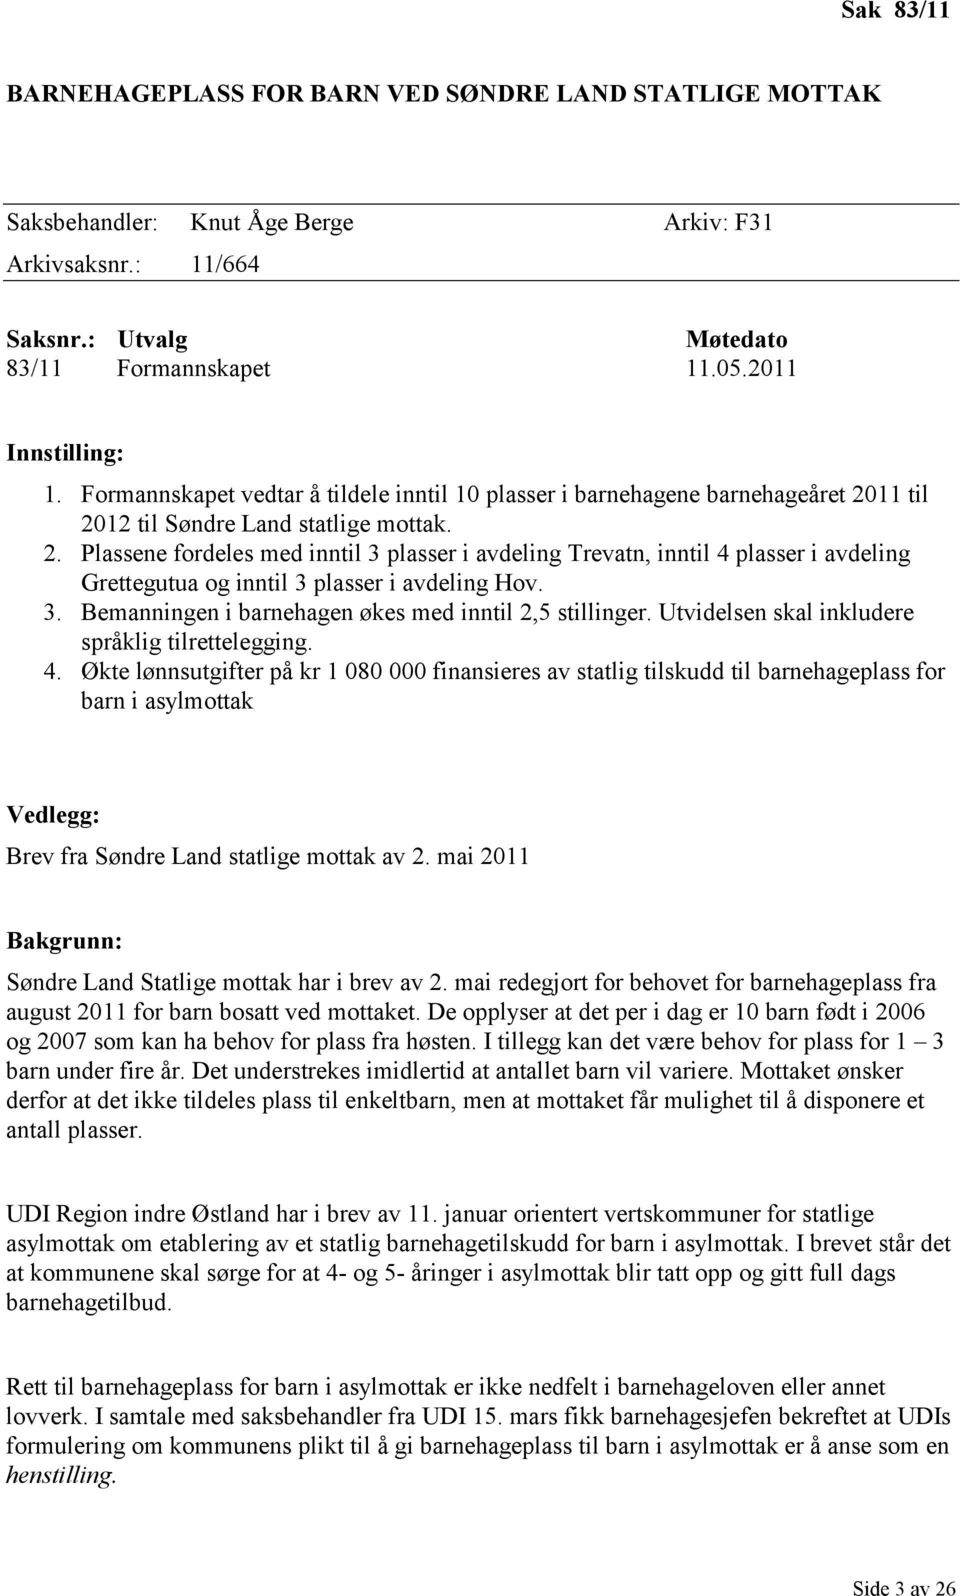 11 til 2012 til Søndre Land statlige mottak. 2. Plassene fordeles med inntil 3 plasser i avdeling Trevatn, inntil 4 plasser i avdeling Grettegutua og inntil 3 plasser i avdeling Hov. 3. Bemanningen i barnehagen økes med inntil 2,5 stillinger.